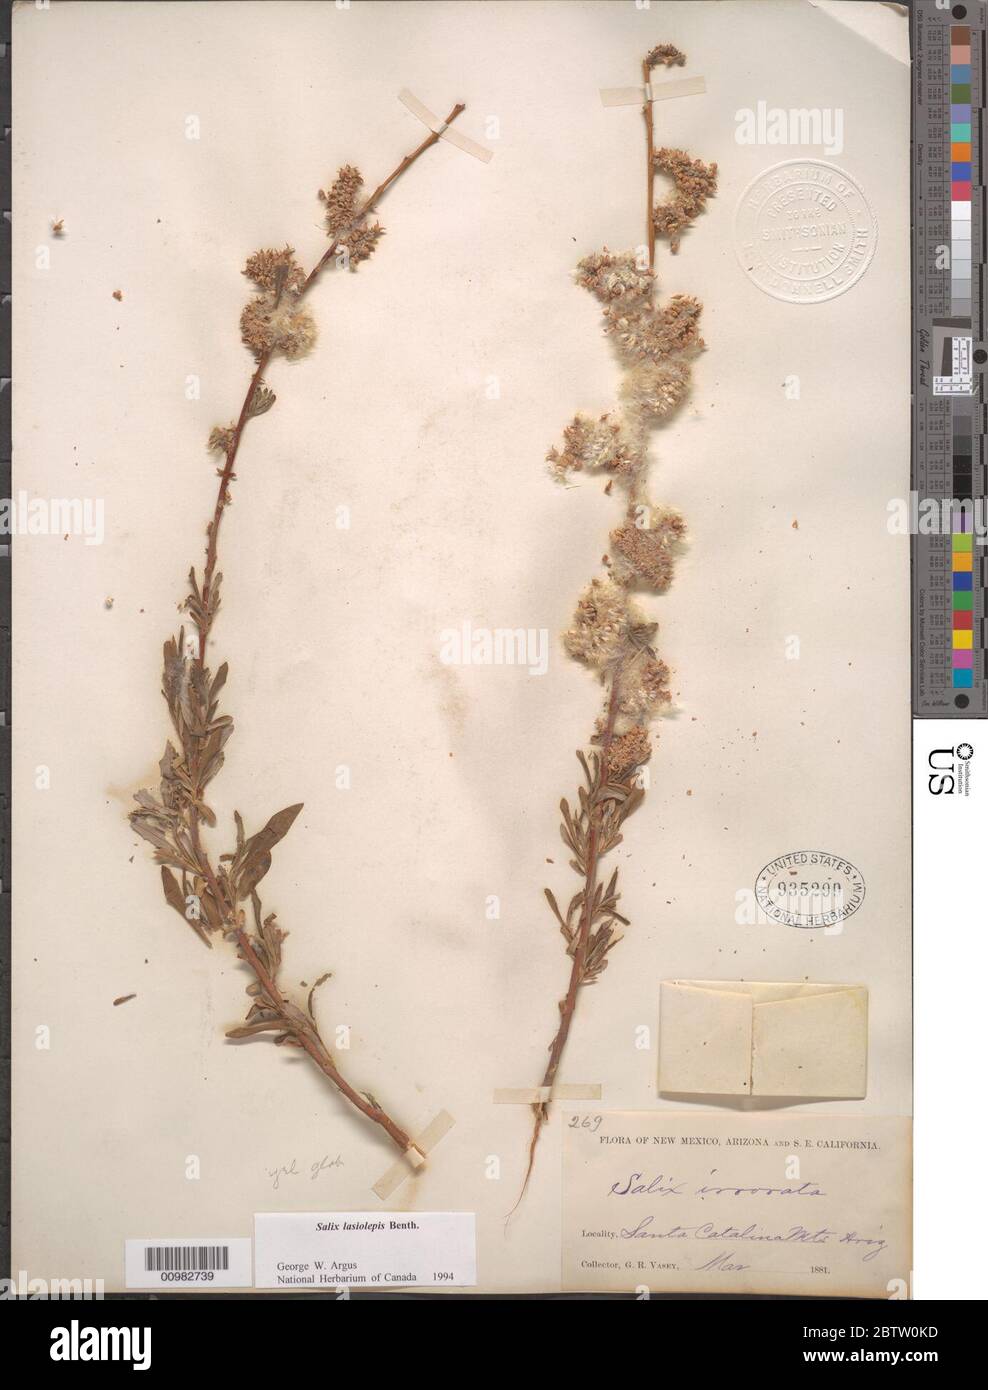 Salix lasiolepis Benth. Stock Photo